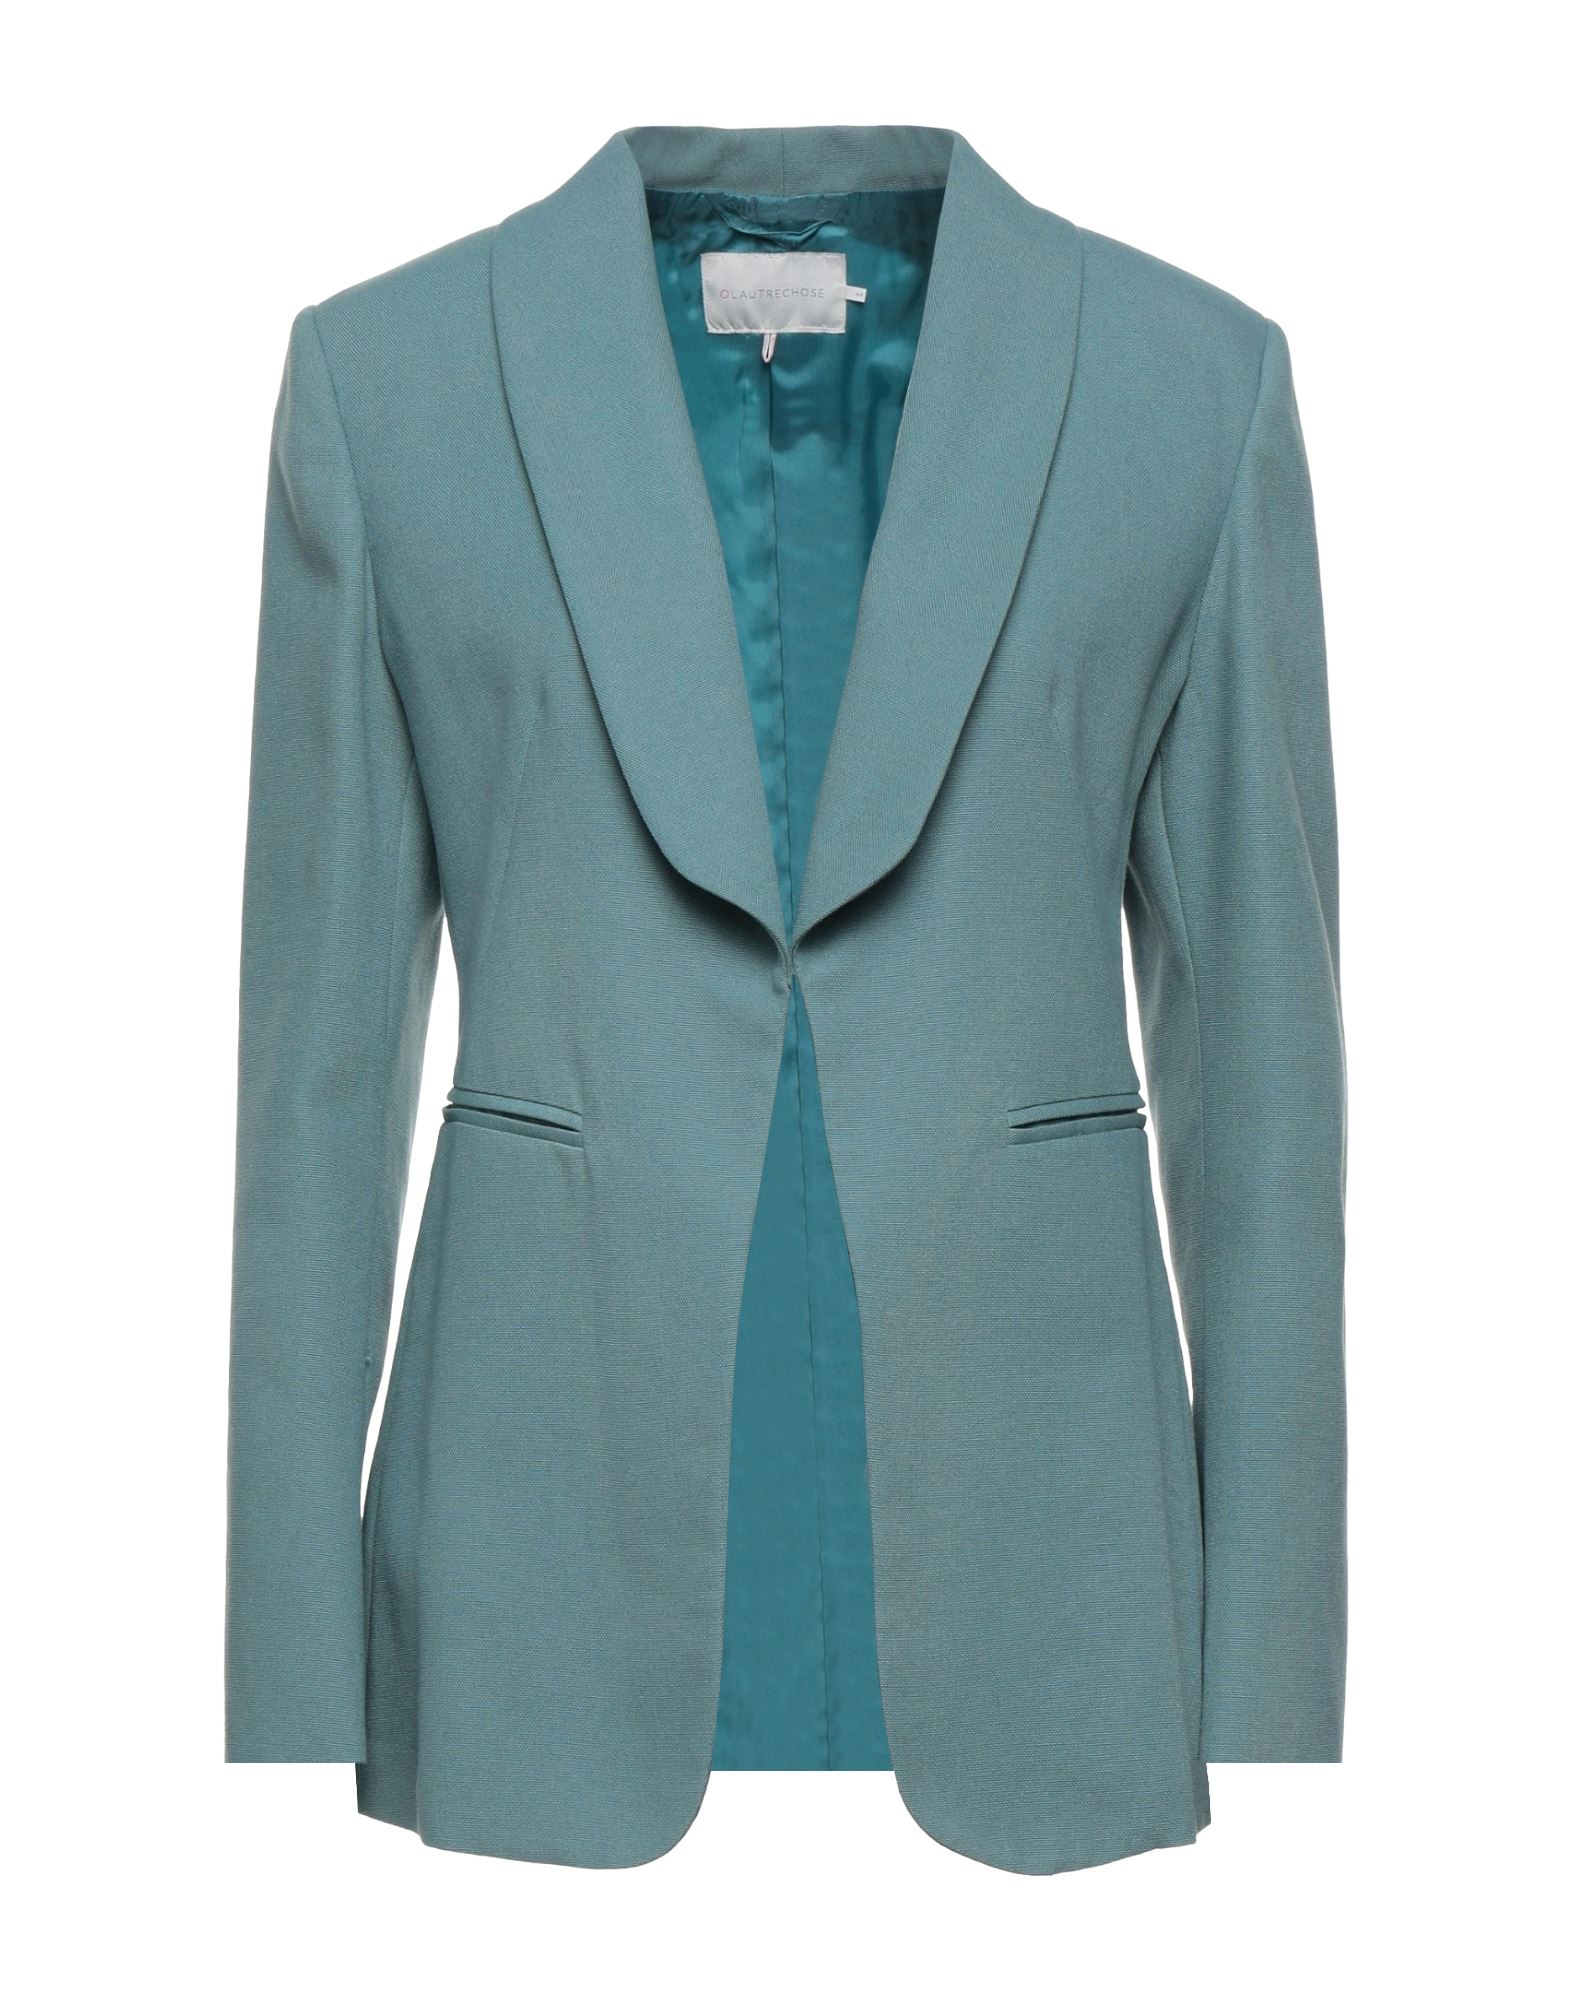 L'autre Chose L' Autre Chose Woman Suit Jacket Pastel Blue Size 8 Cotton